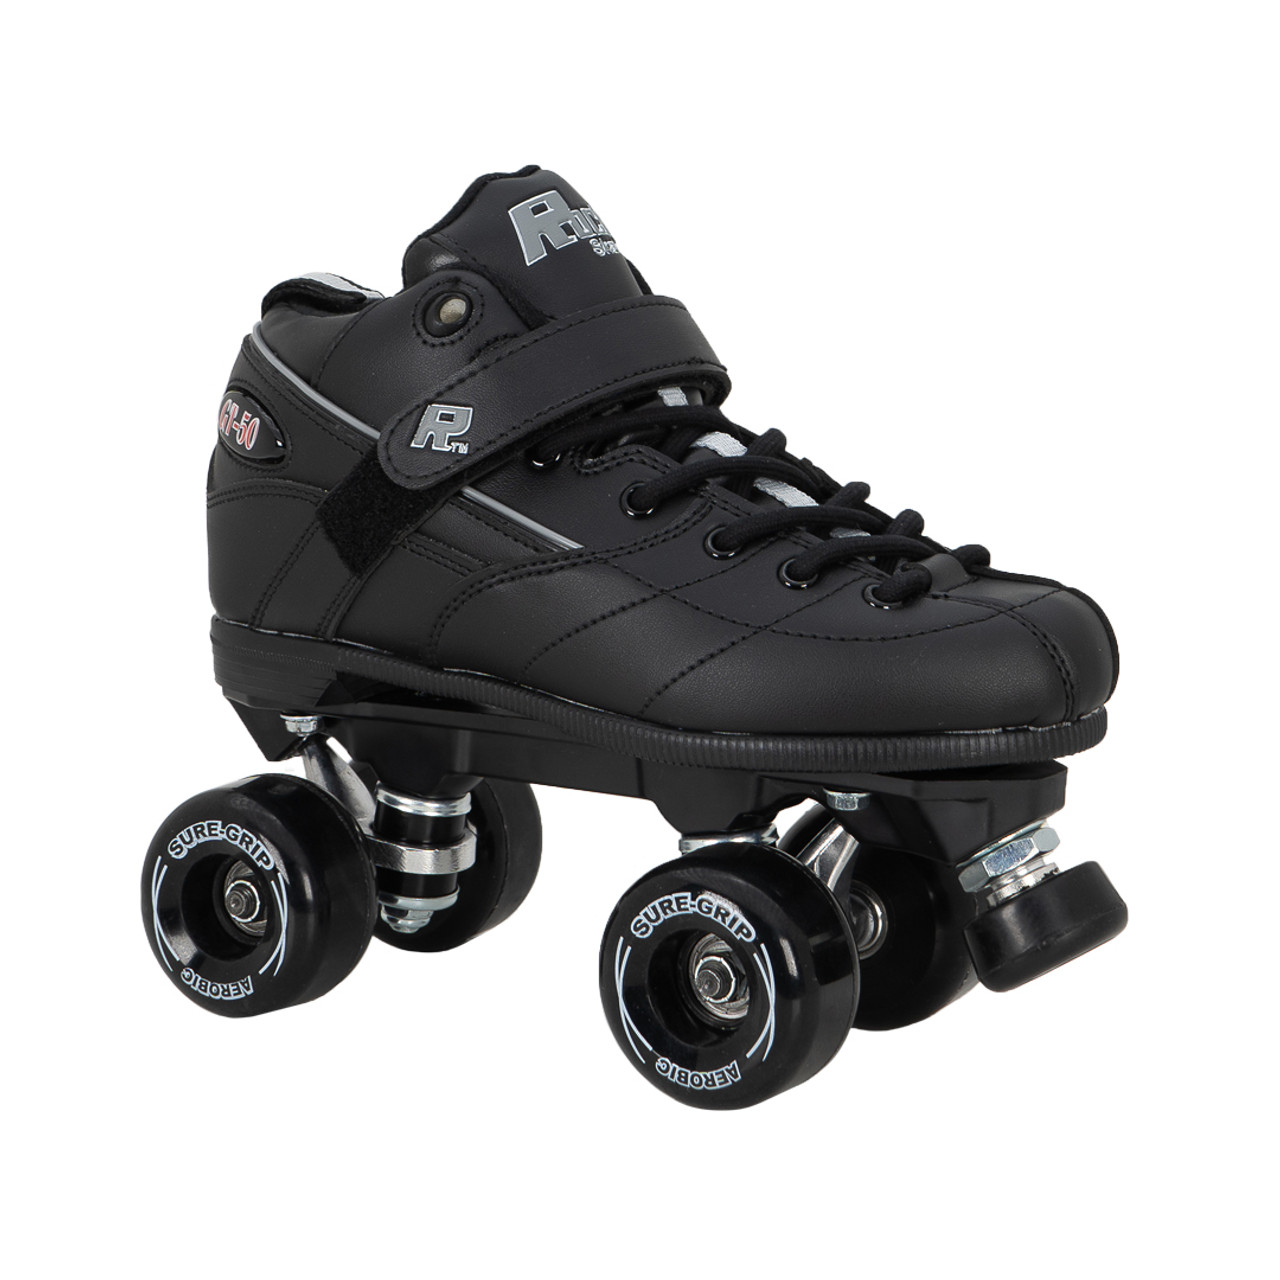 L'équipement recommandé - Roller - Skate - Trott' - Aix Roll'n'Ride